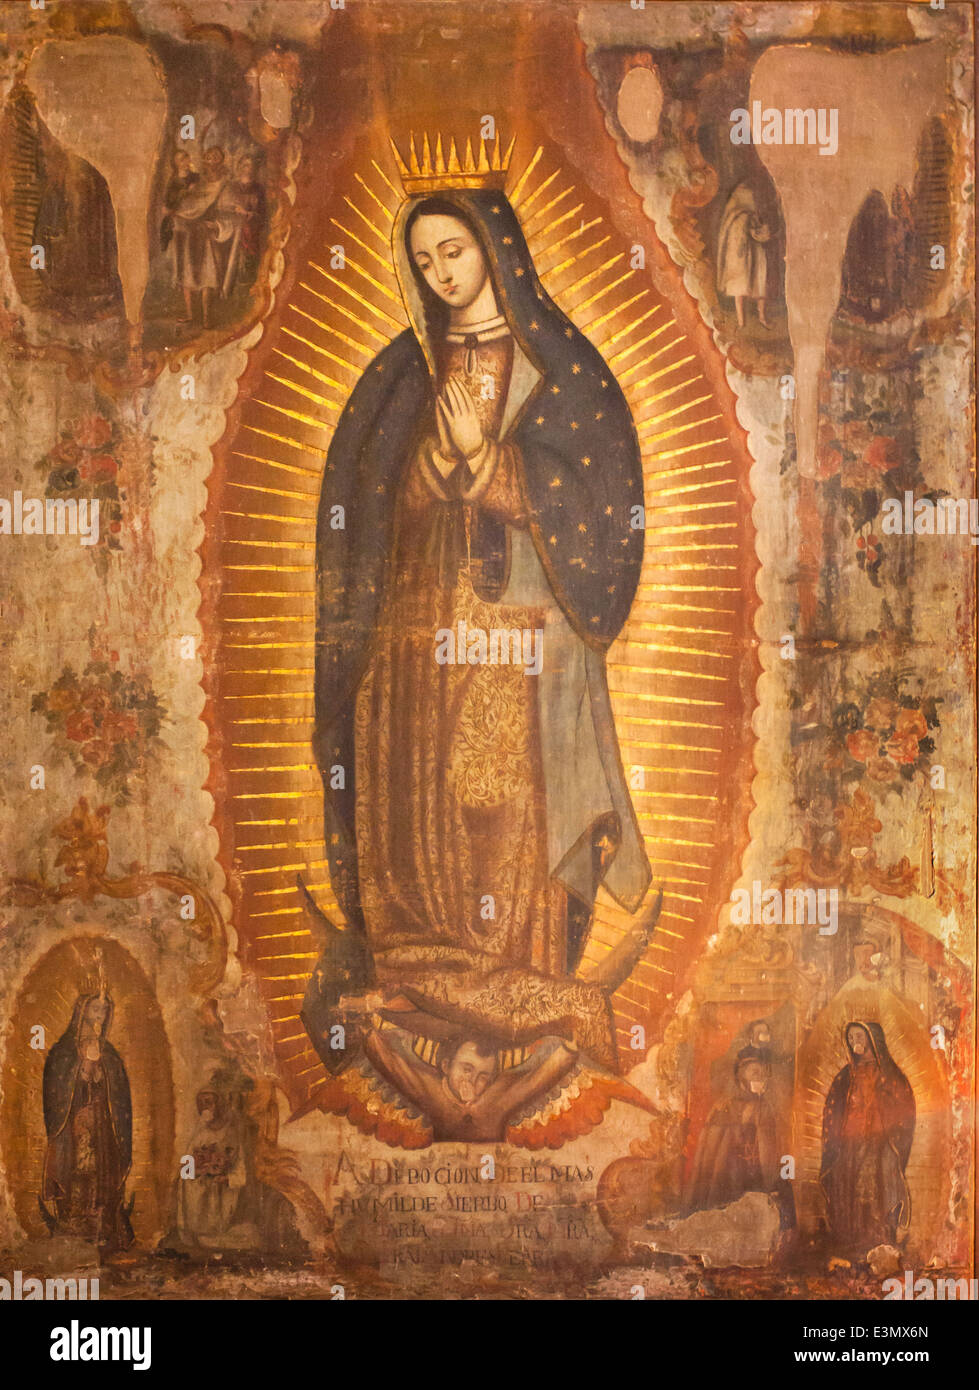 18e siècle peinture à l'huile de la Virgen de Guadalupe dans l'ex couvent de San Agustin, Yuriria, Guanajuato. Artiste inconnu. Banque D'Images